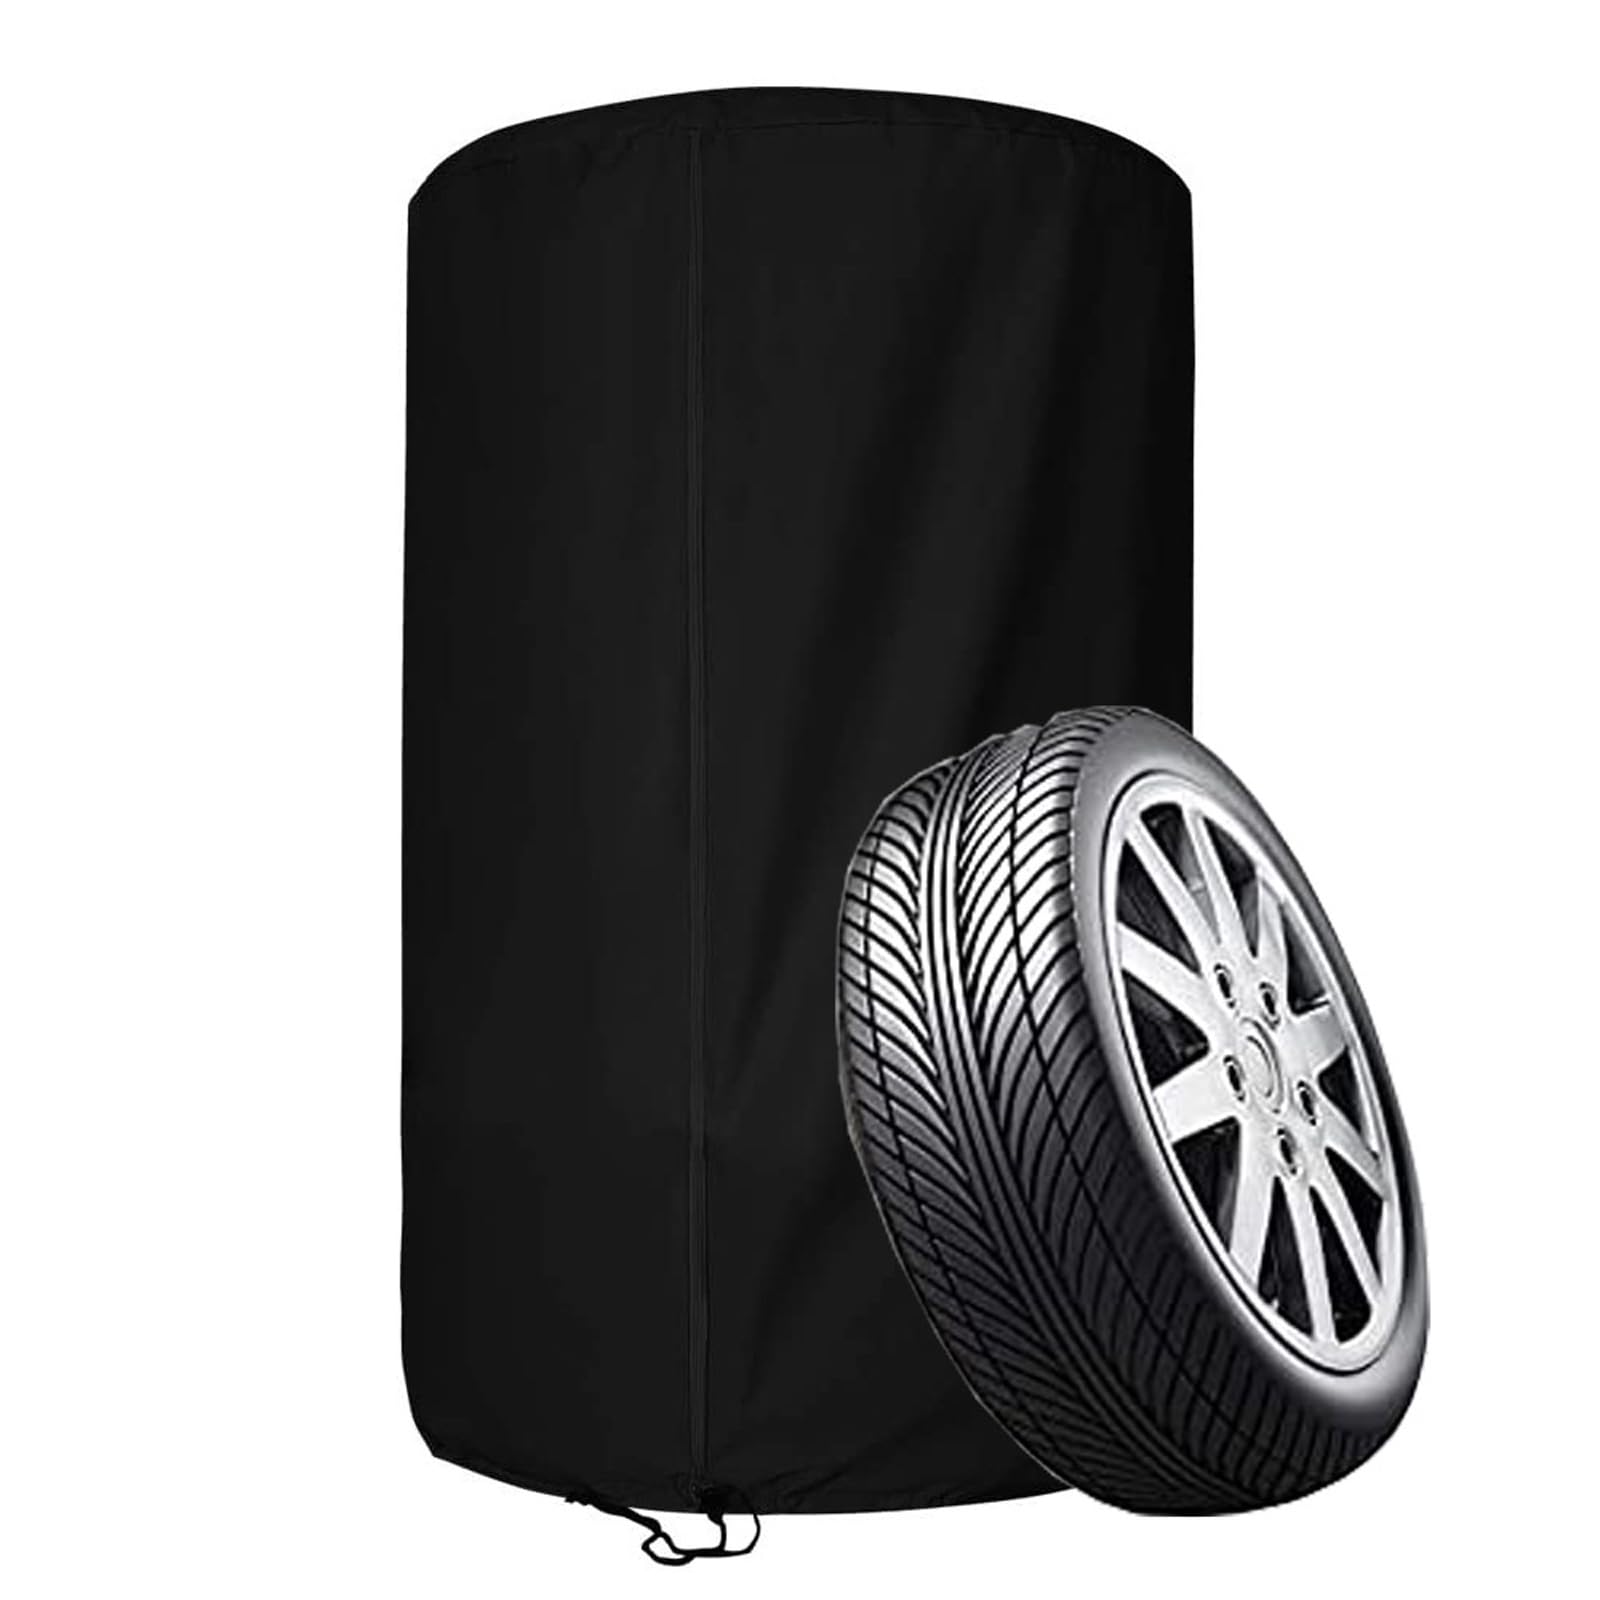 Reifenabdeckung für 4 Reifen, wasserdichte Reifenschutzhülle für 4 Autoreifen, 210D /420D OxfordAufbewahrungstasche für 4 Ersatzreifen mit Reißverschluss(Size:420D Oxford ：73 * 110cm,Color:Black) von Crysterris